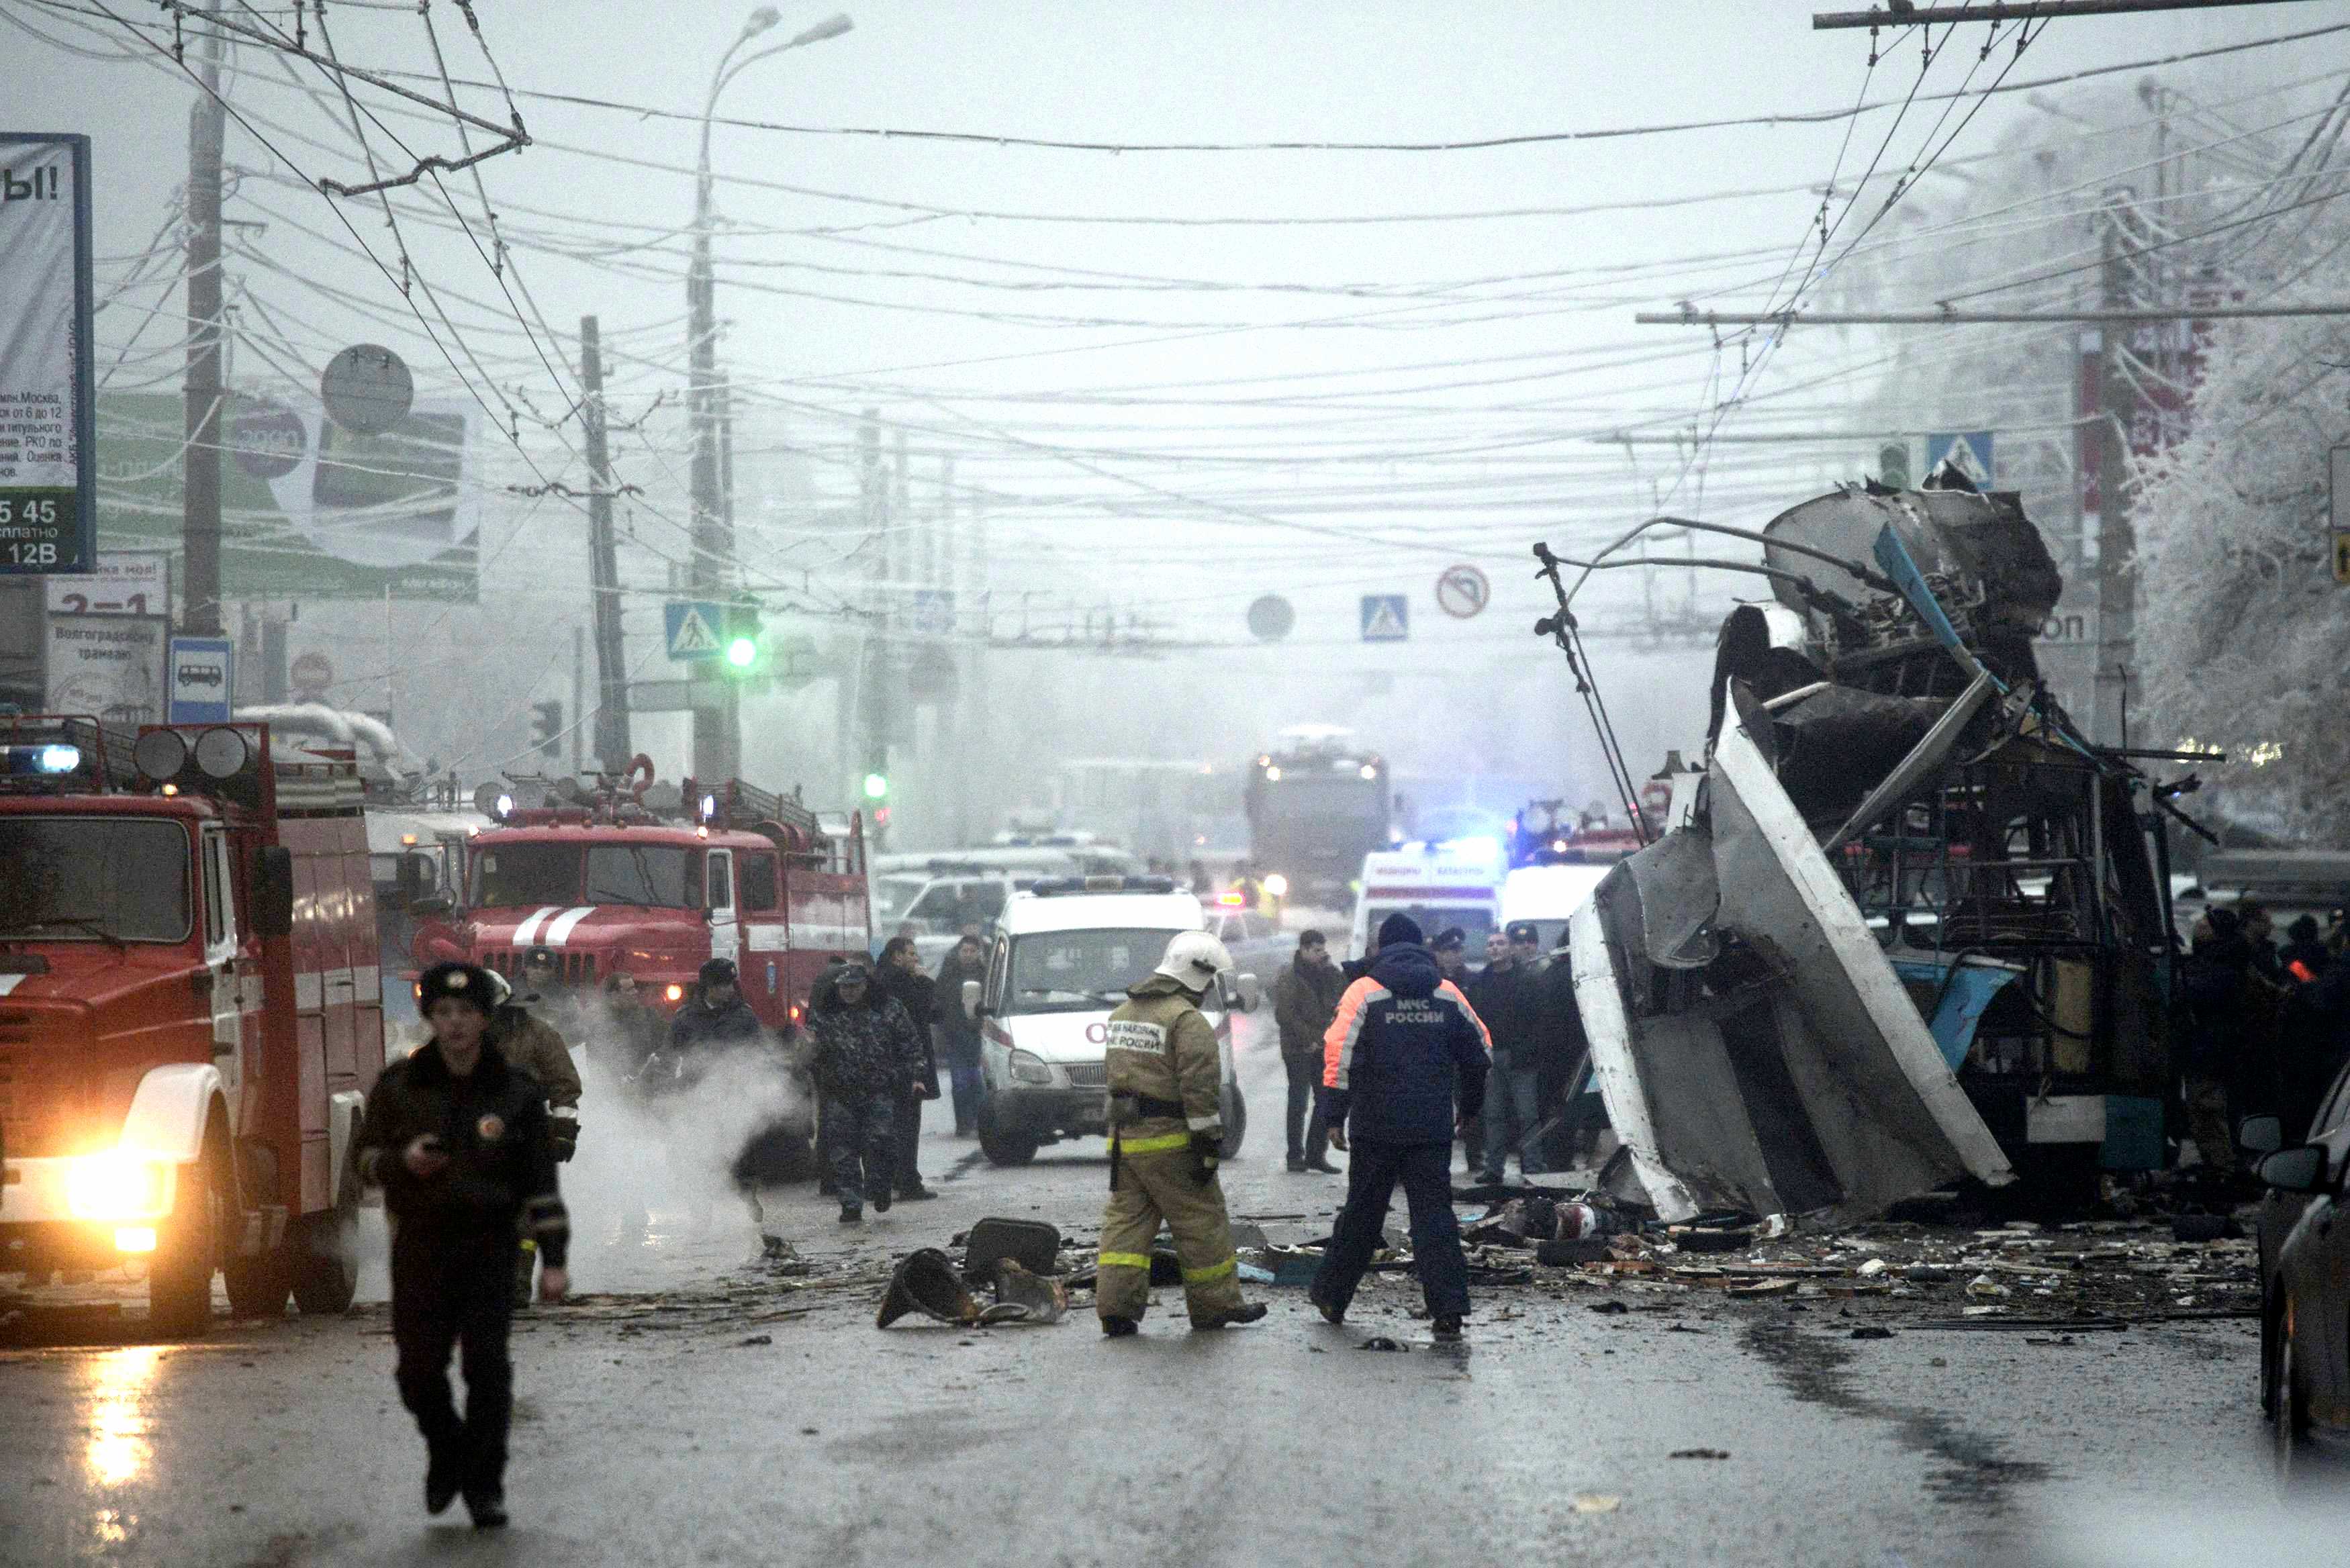 Видео 30 декабря. Теракт в троллейбусе в Волгограде 30 декабря. Взрыв троллейбуса в Волгограде. Взрыв троллейбуса в Волгограде 30 декабря 2013.